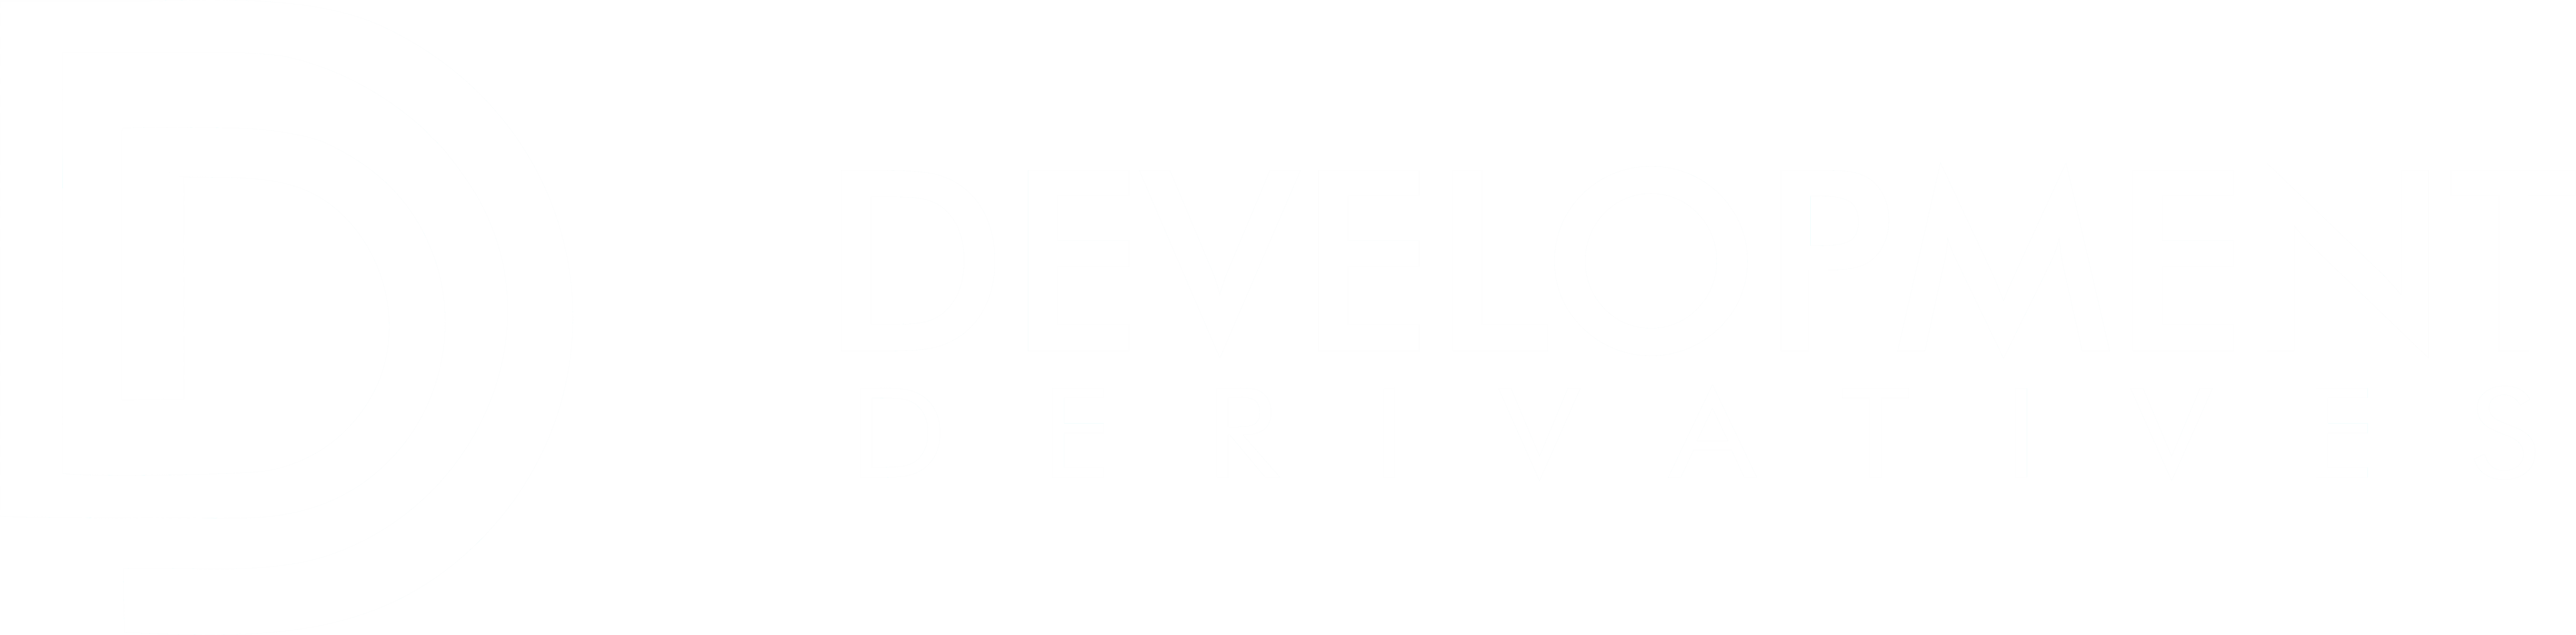 Development Derivatives